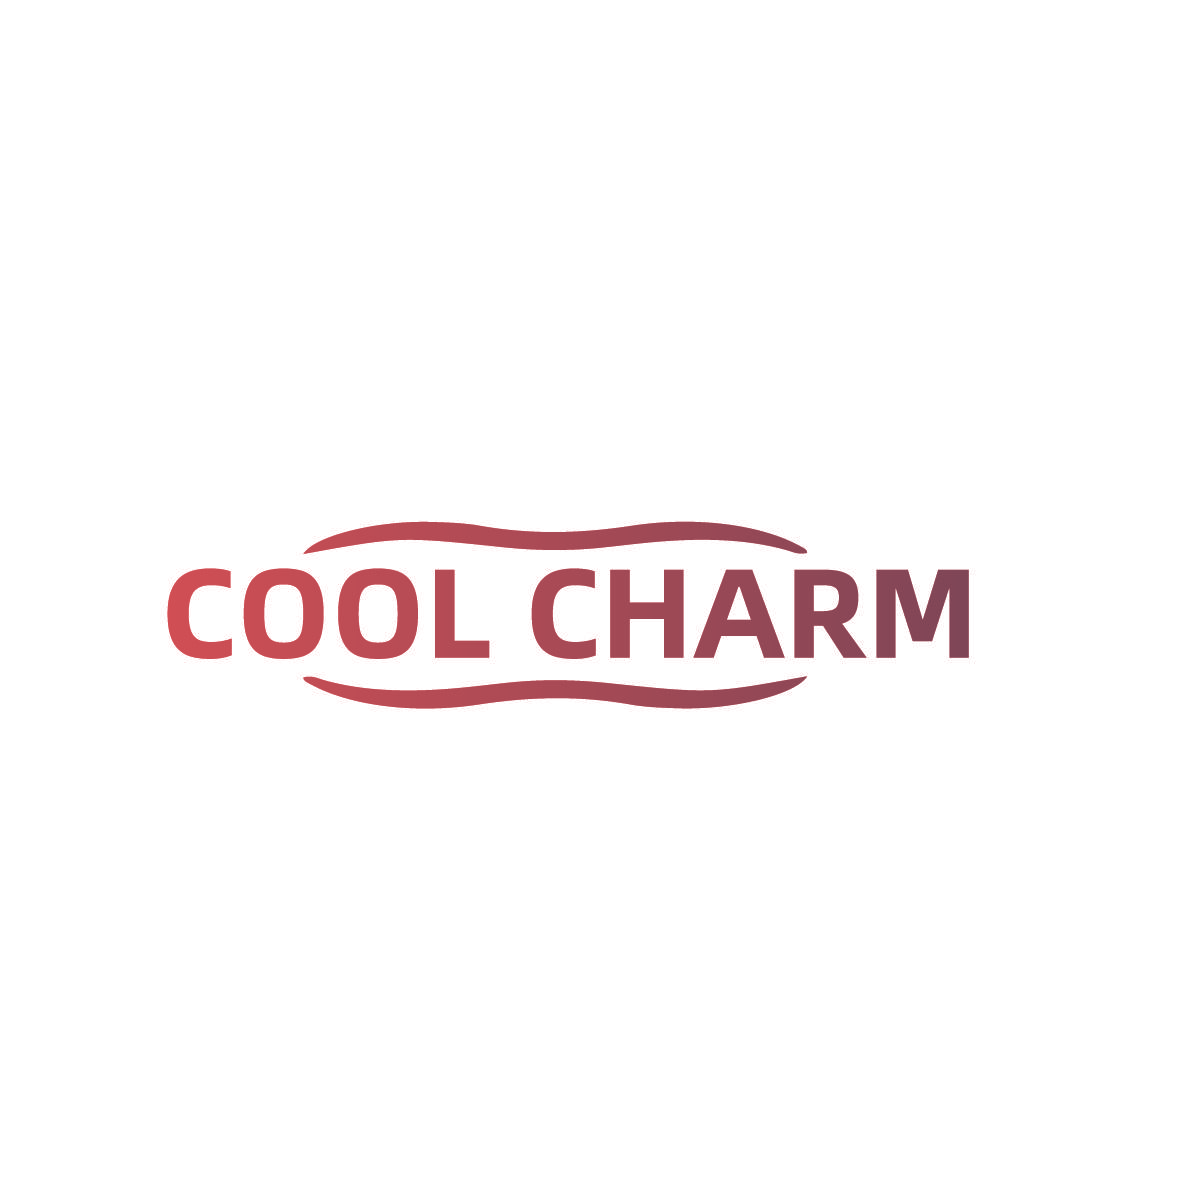 COOL CHARM